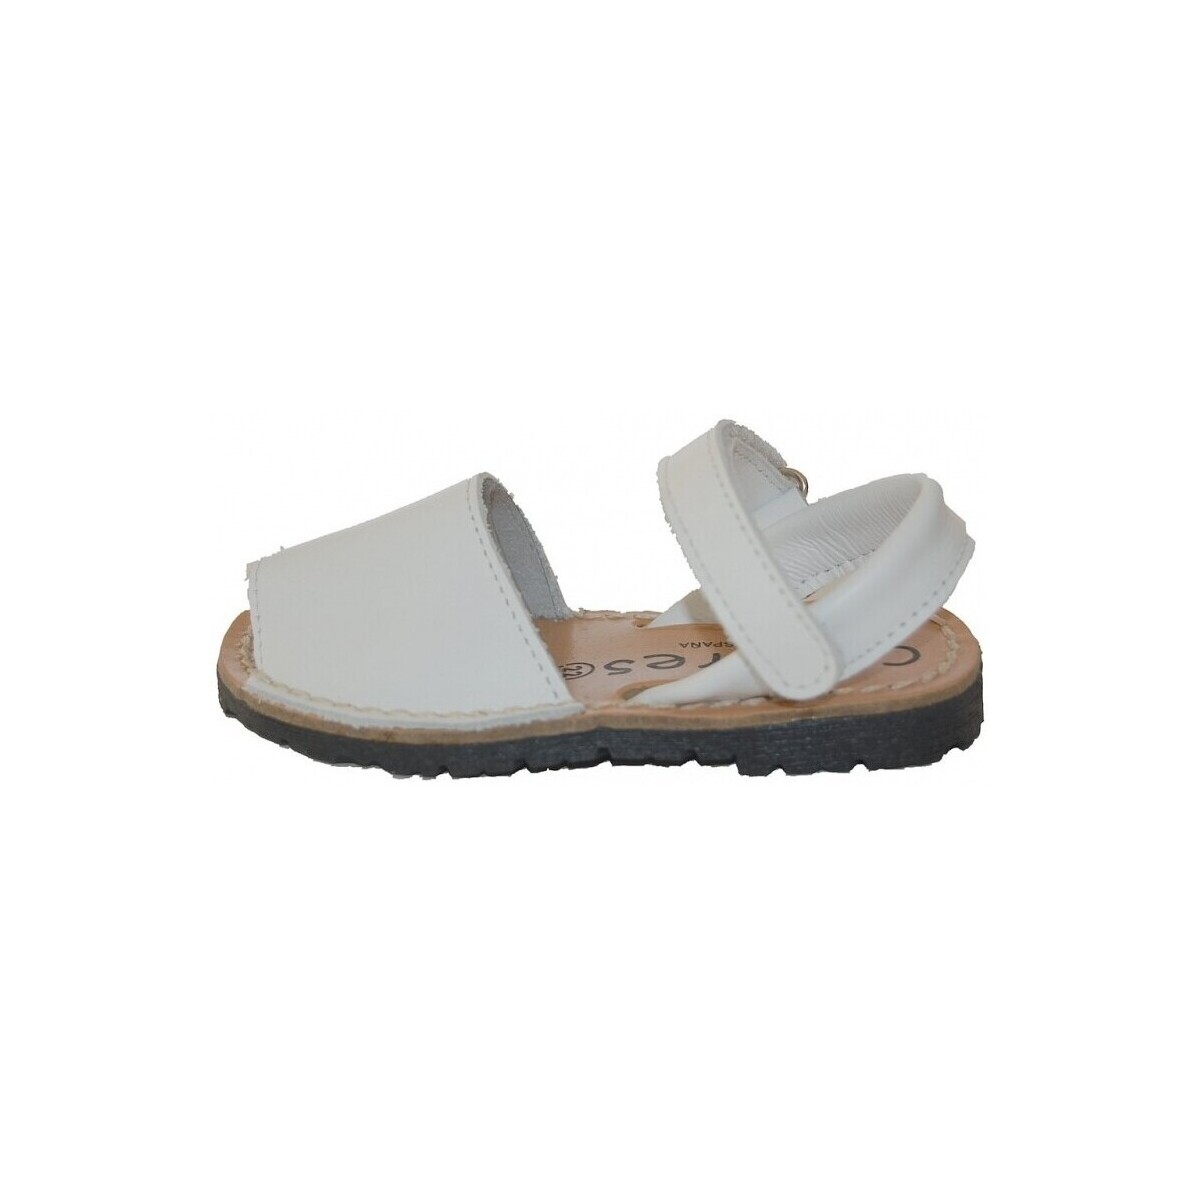 Schoenen Sandalen / Open schoenen Colores 17865-18 Wit